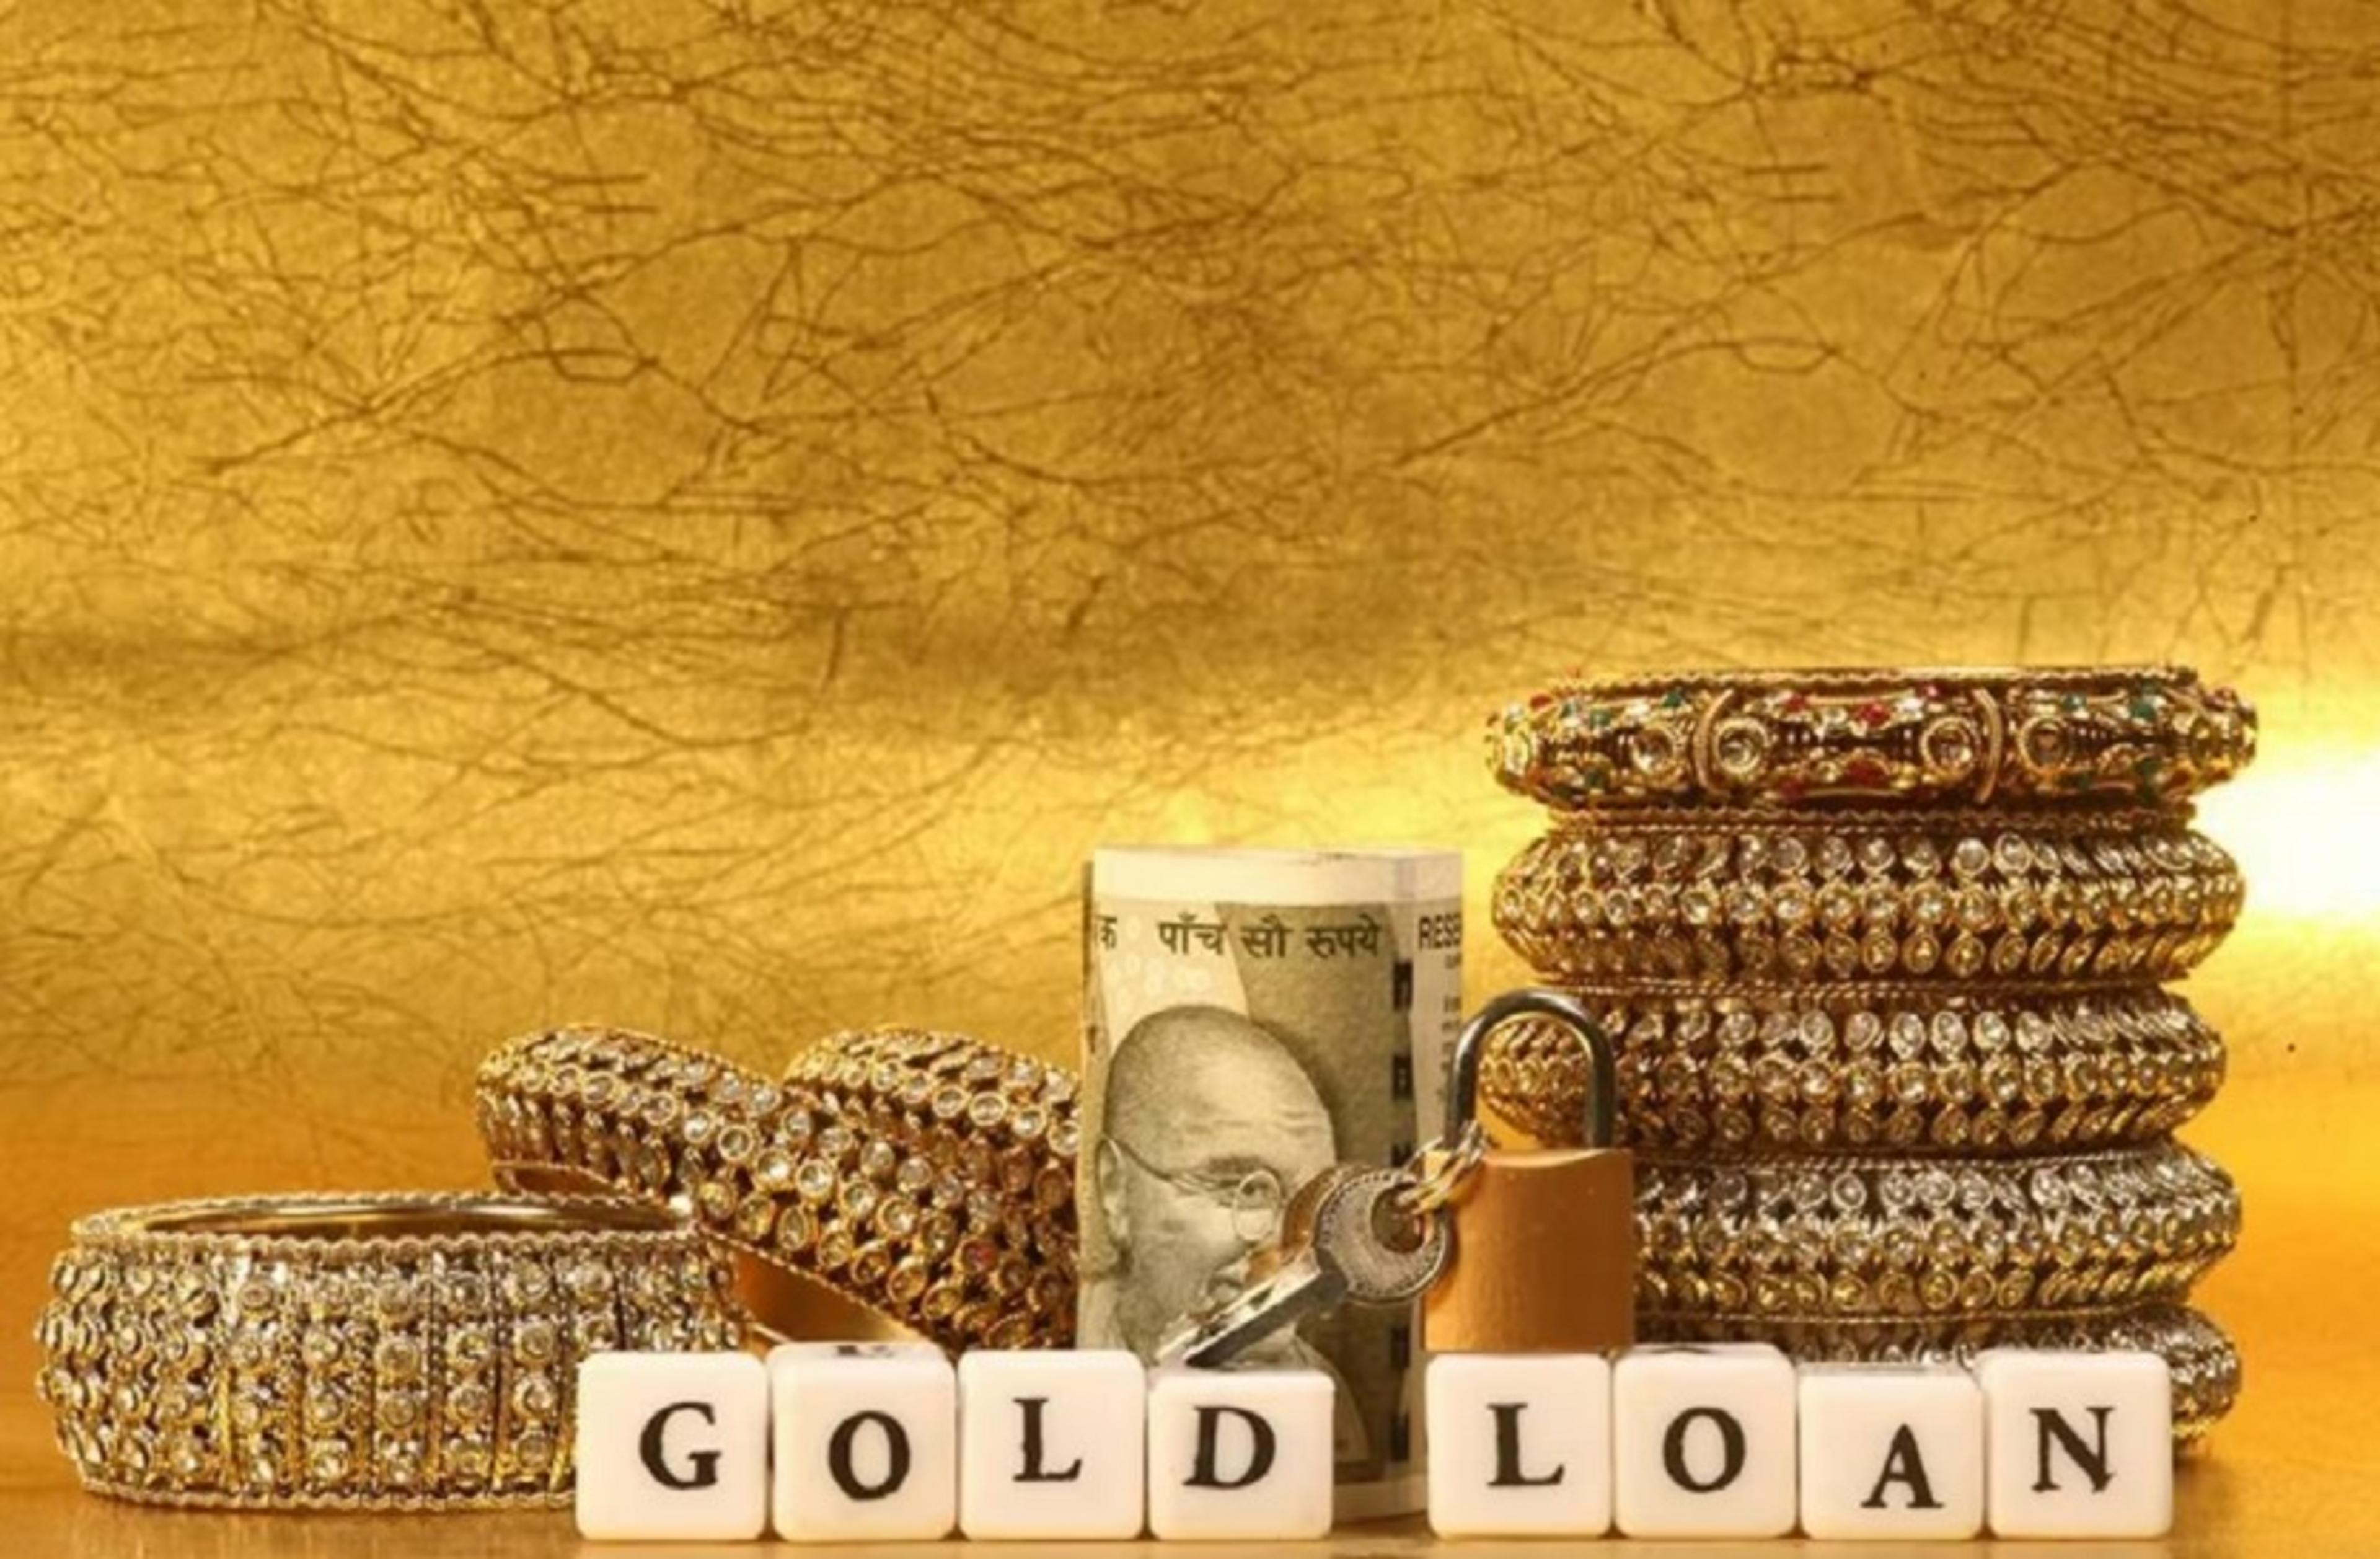 Gold Loan: हर तबके के लोगों को गोल्ड लोन देता है वित्तीय सुरक्षा